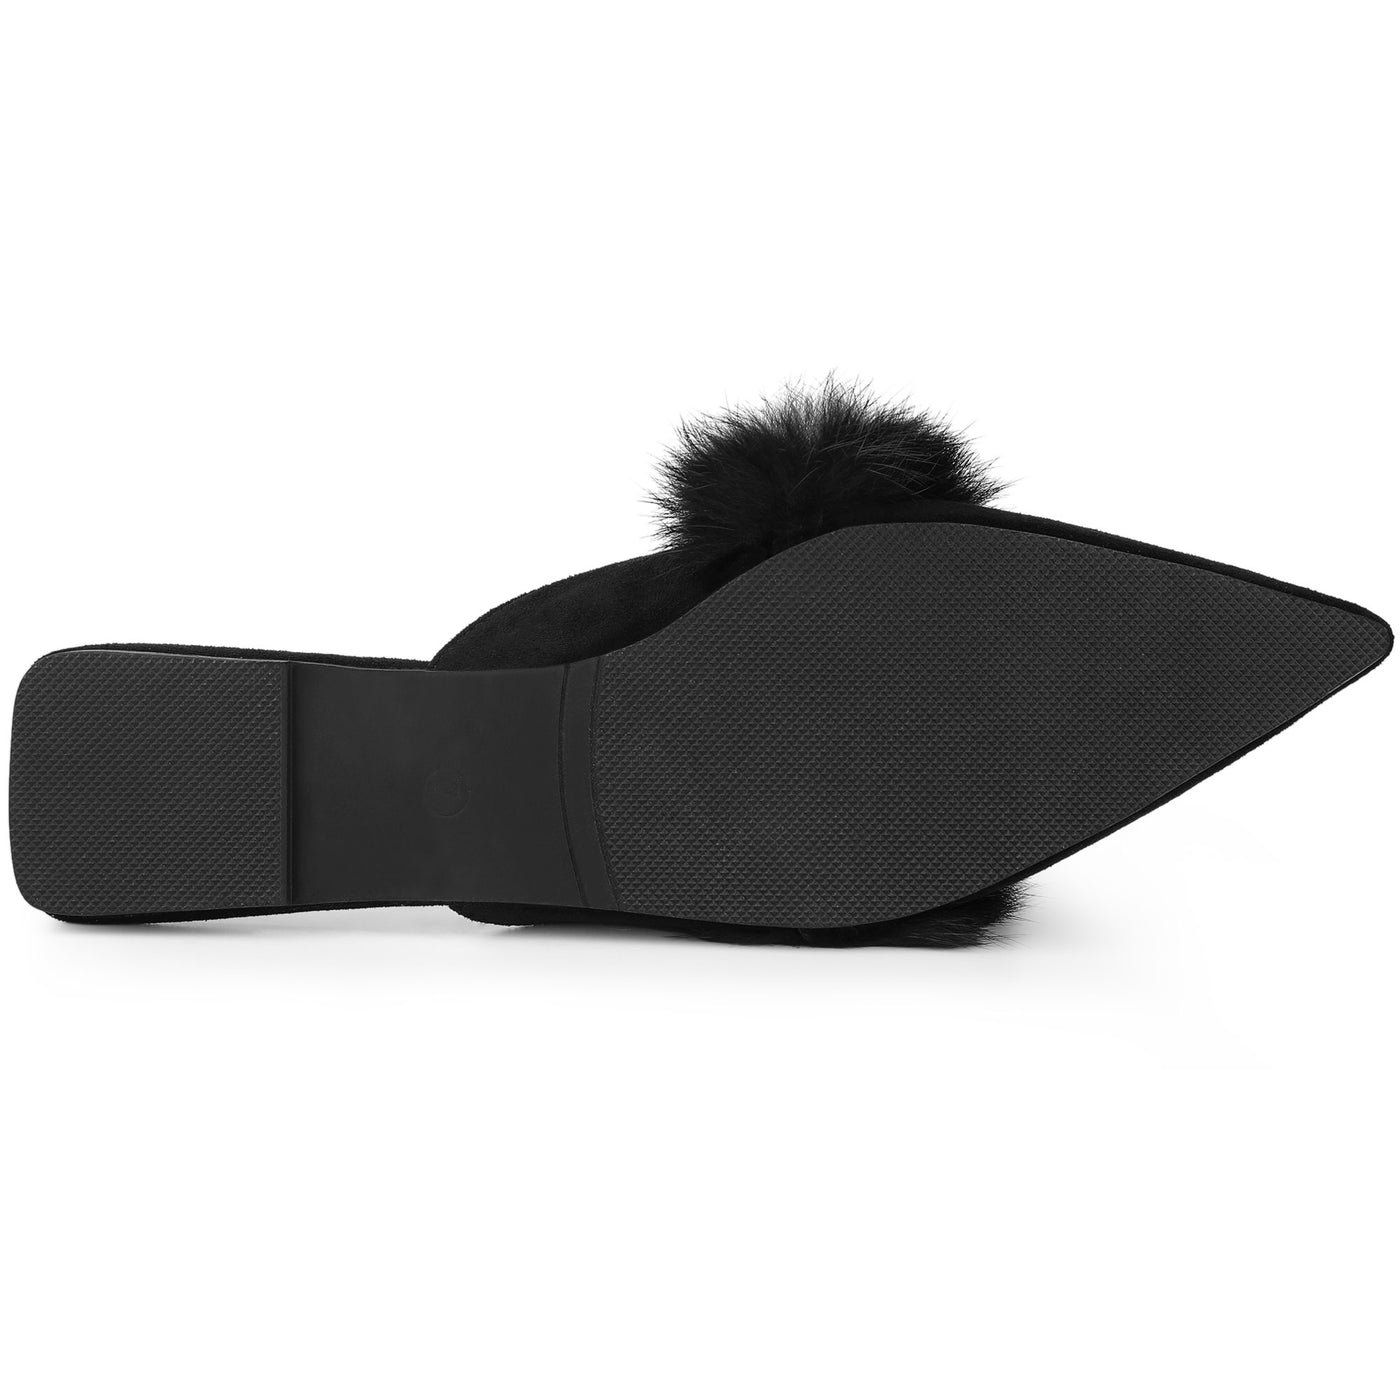 Allegra K Women's Pointed Toe Faux Fur Slip on Flat Slide Mules